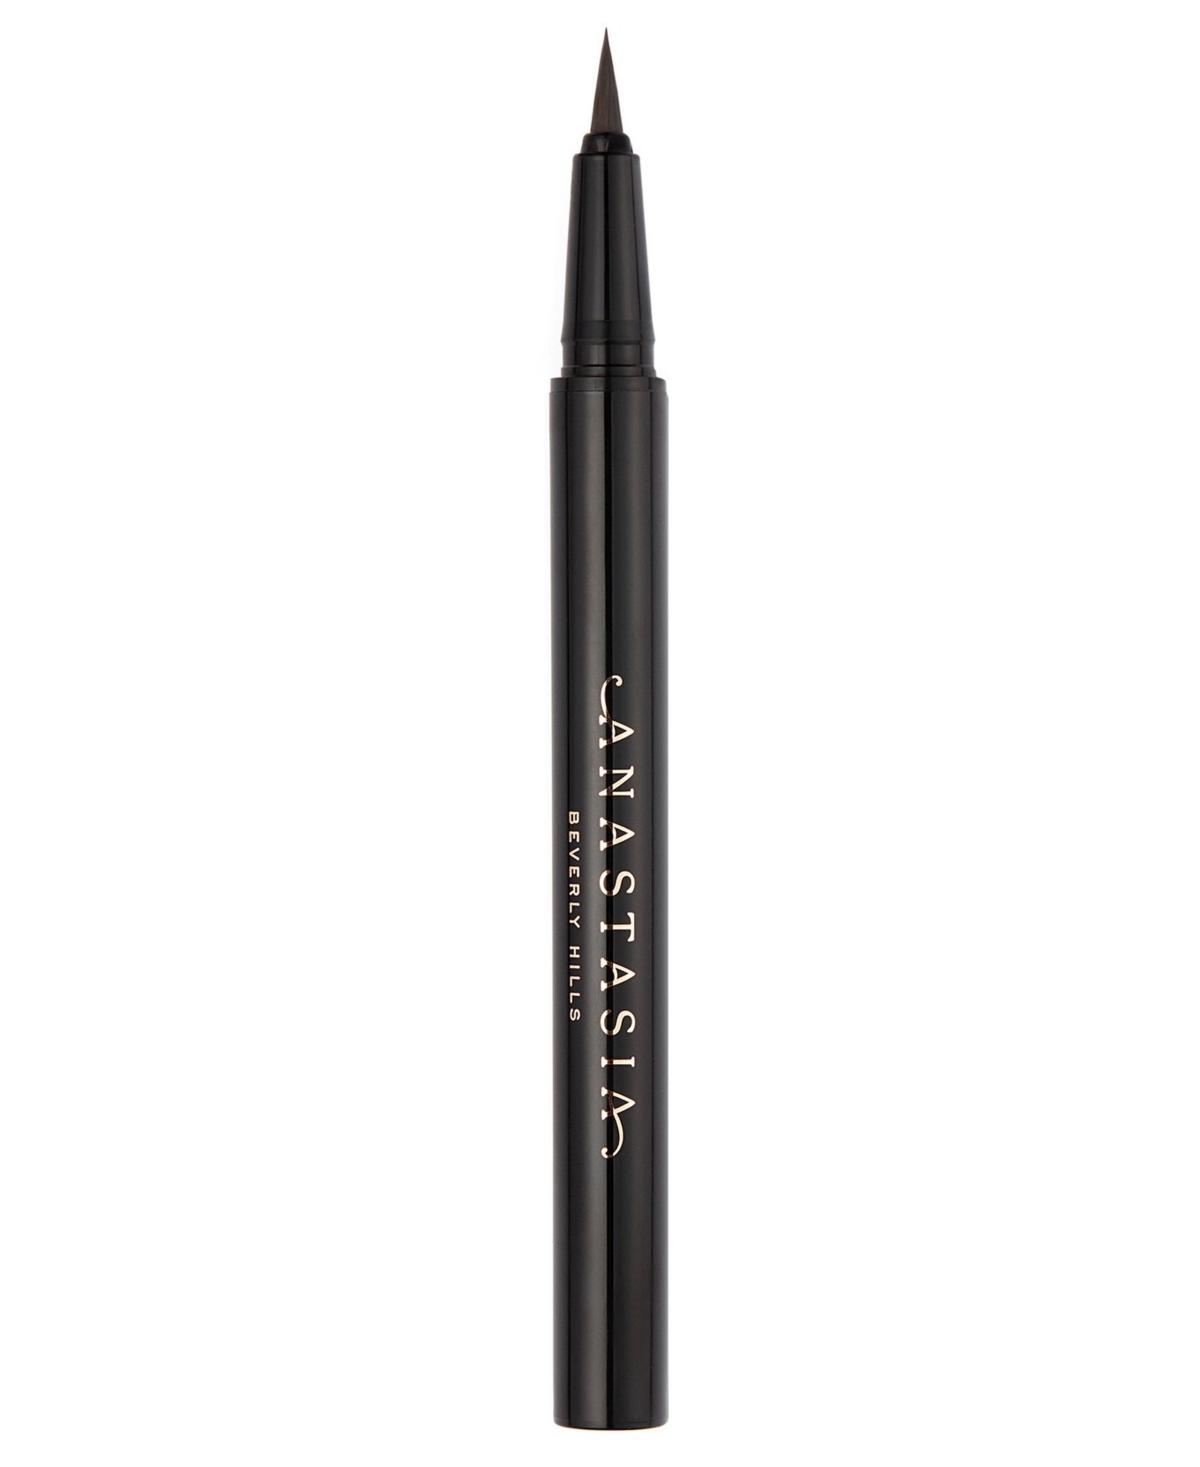 Anastasia Beverly Hills Micro-stroking Detailing Brow Pen In Dark Brown (dark Brown Hair With Warm Un